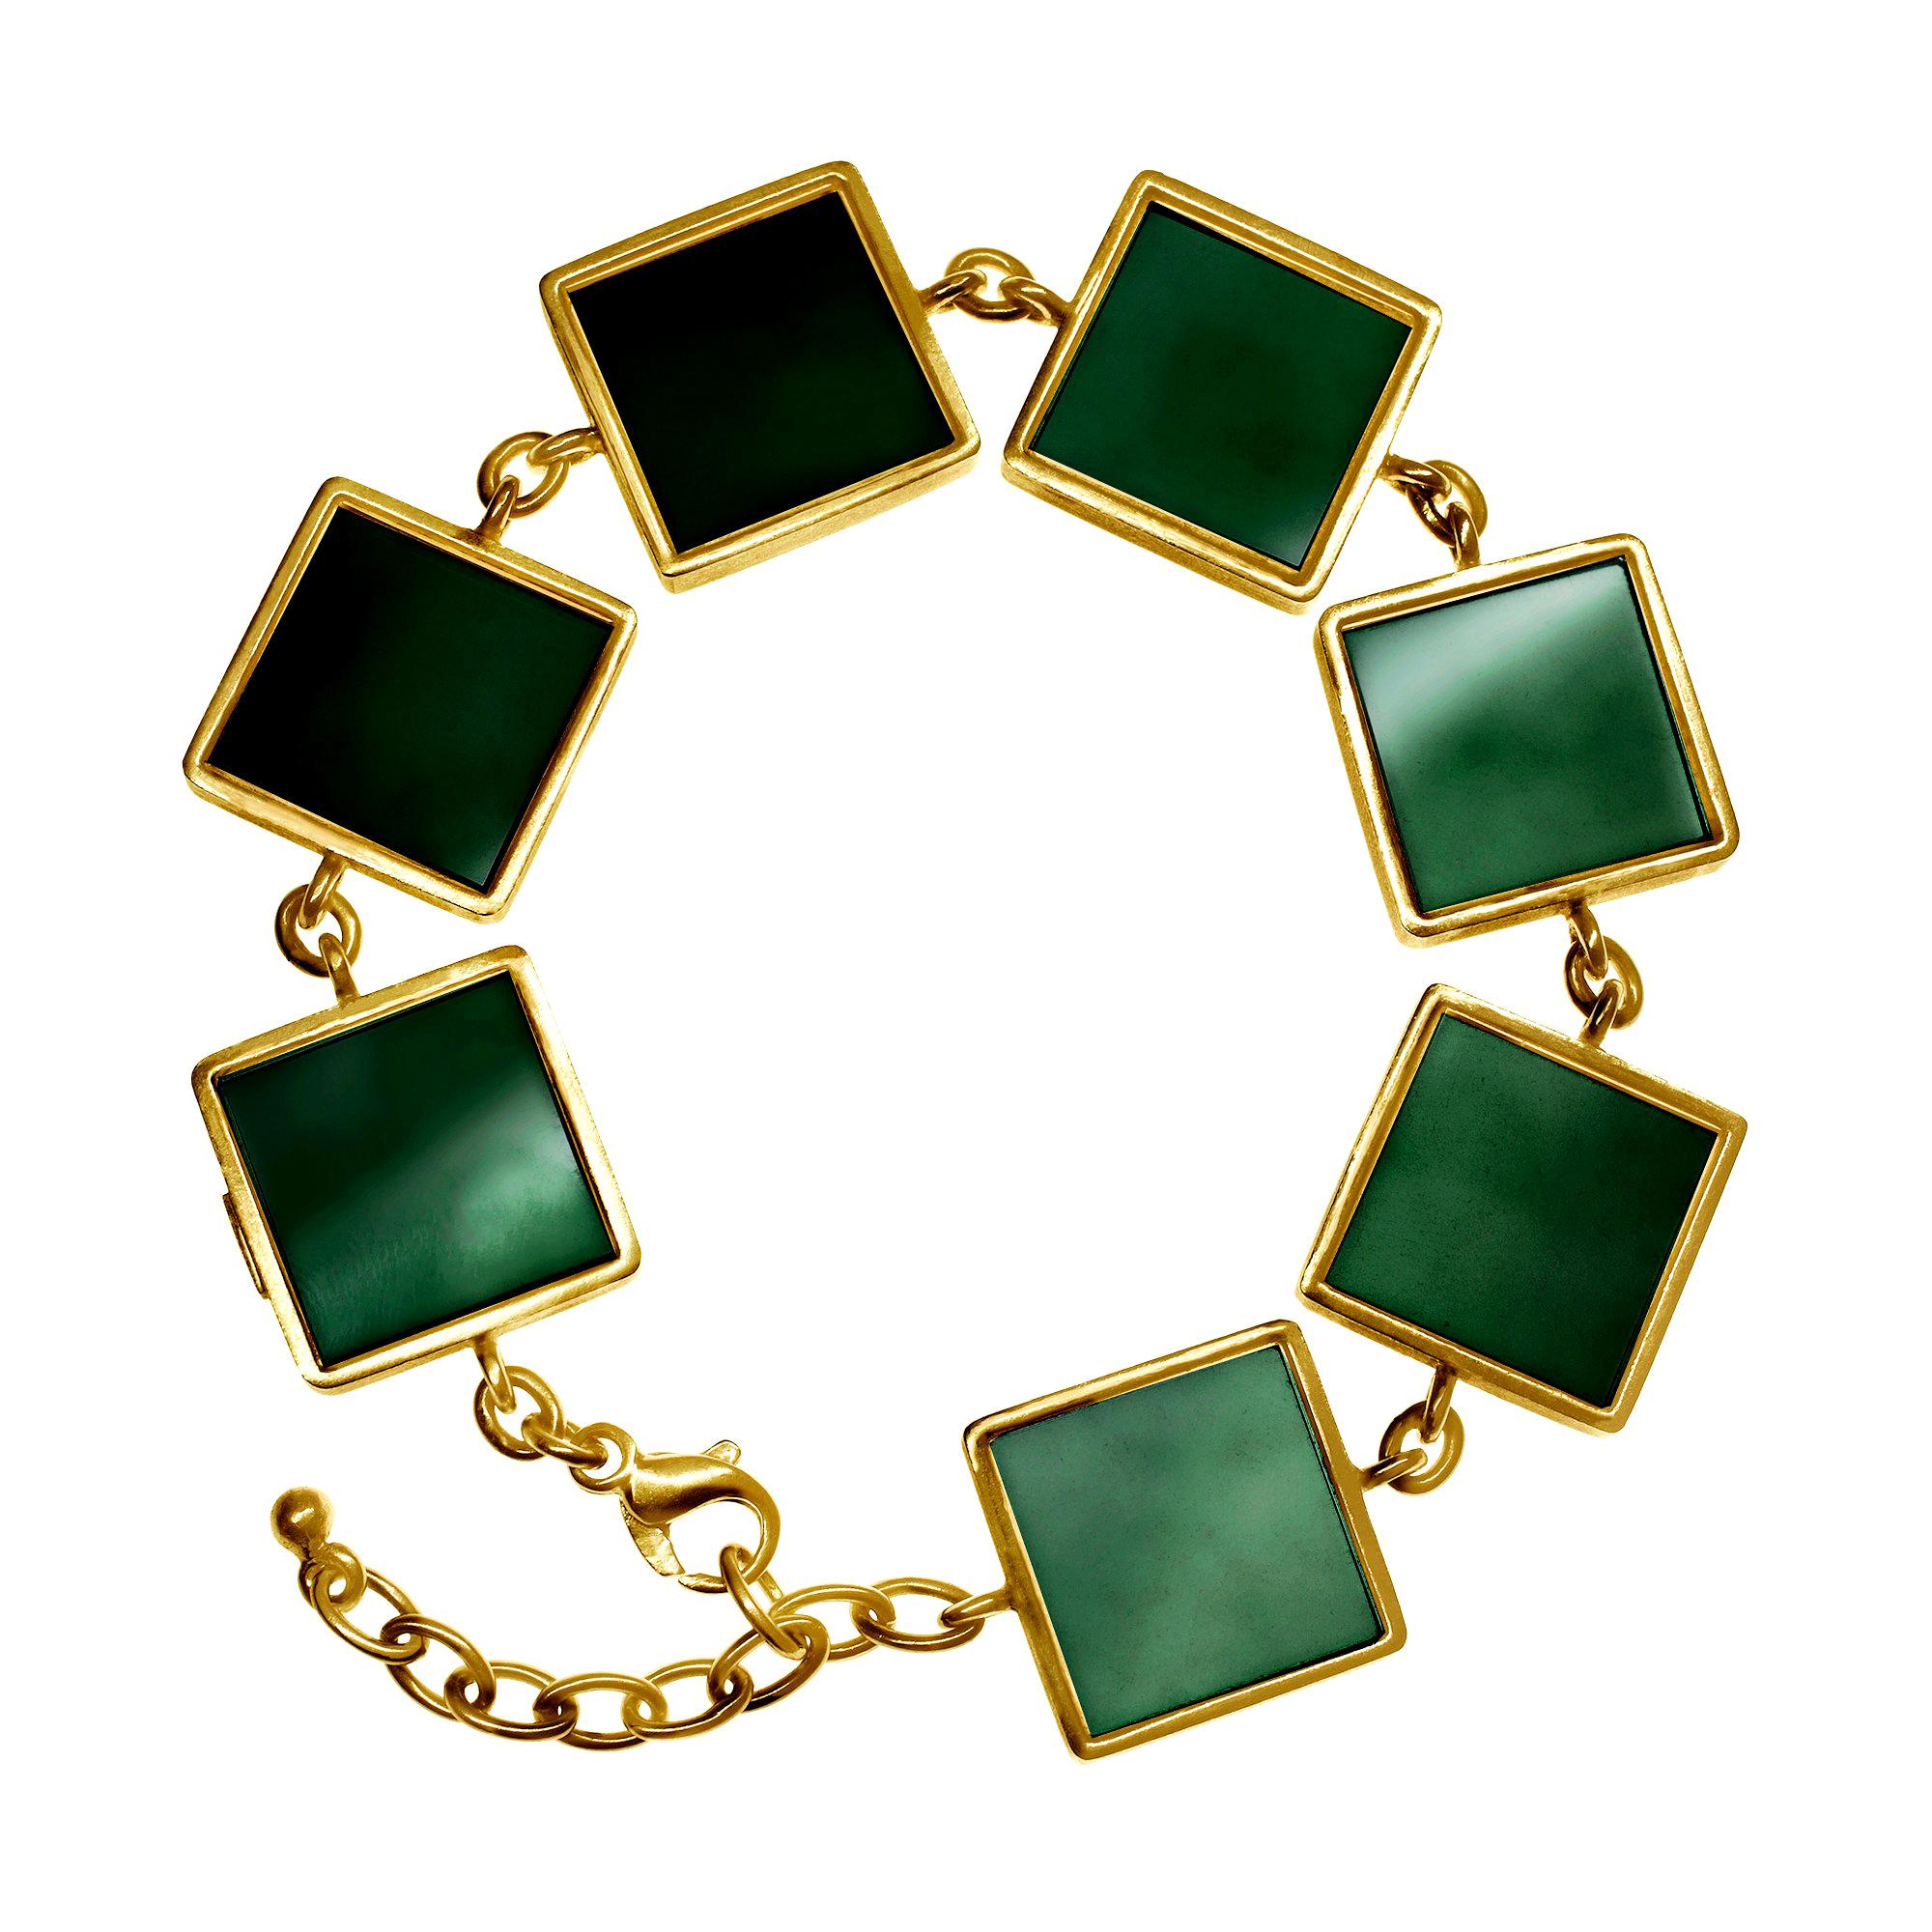 Featured in Vogue 14 Karat Gold Art Deco Style Bracelet with Dark Green Quartz 